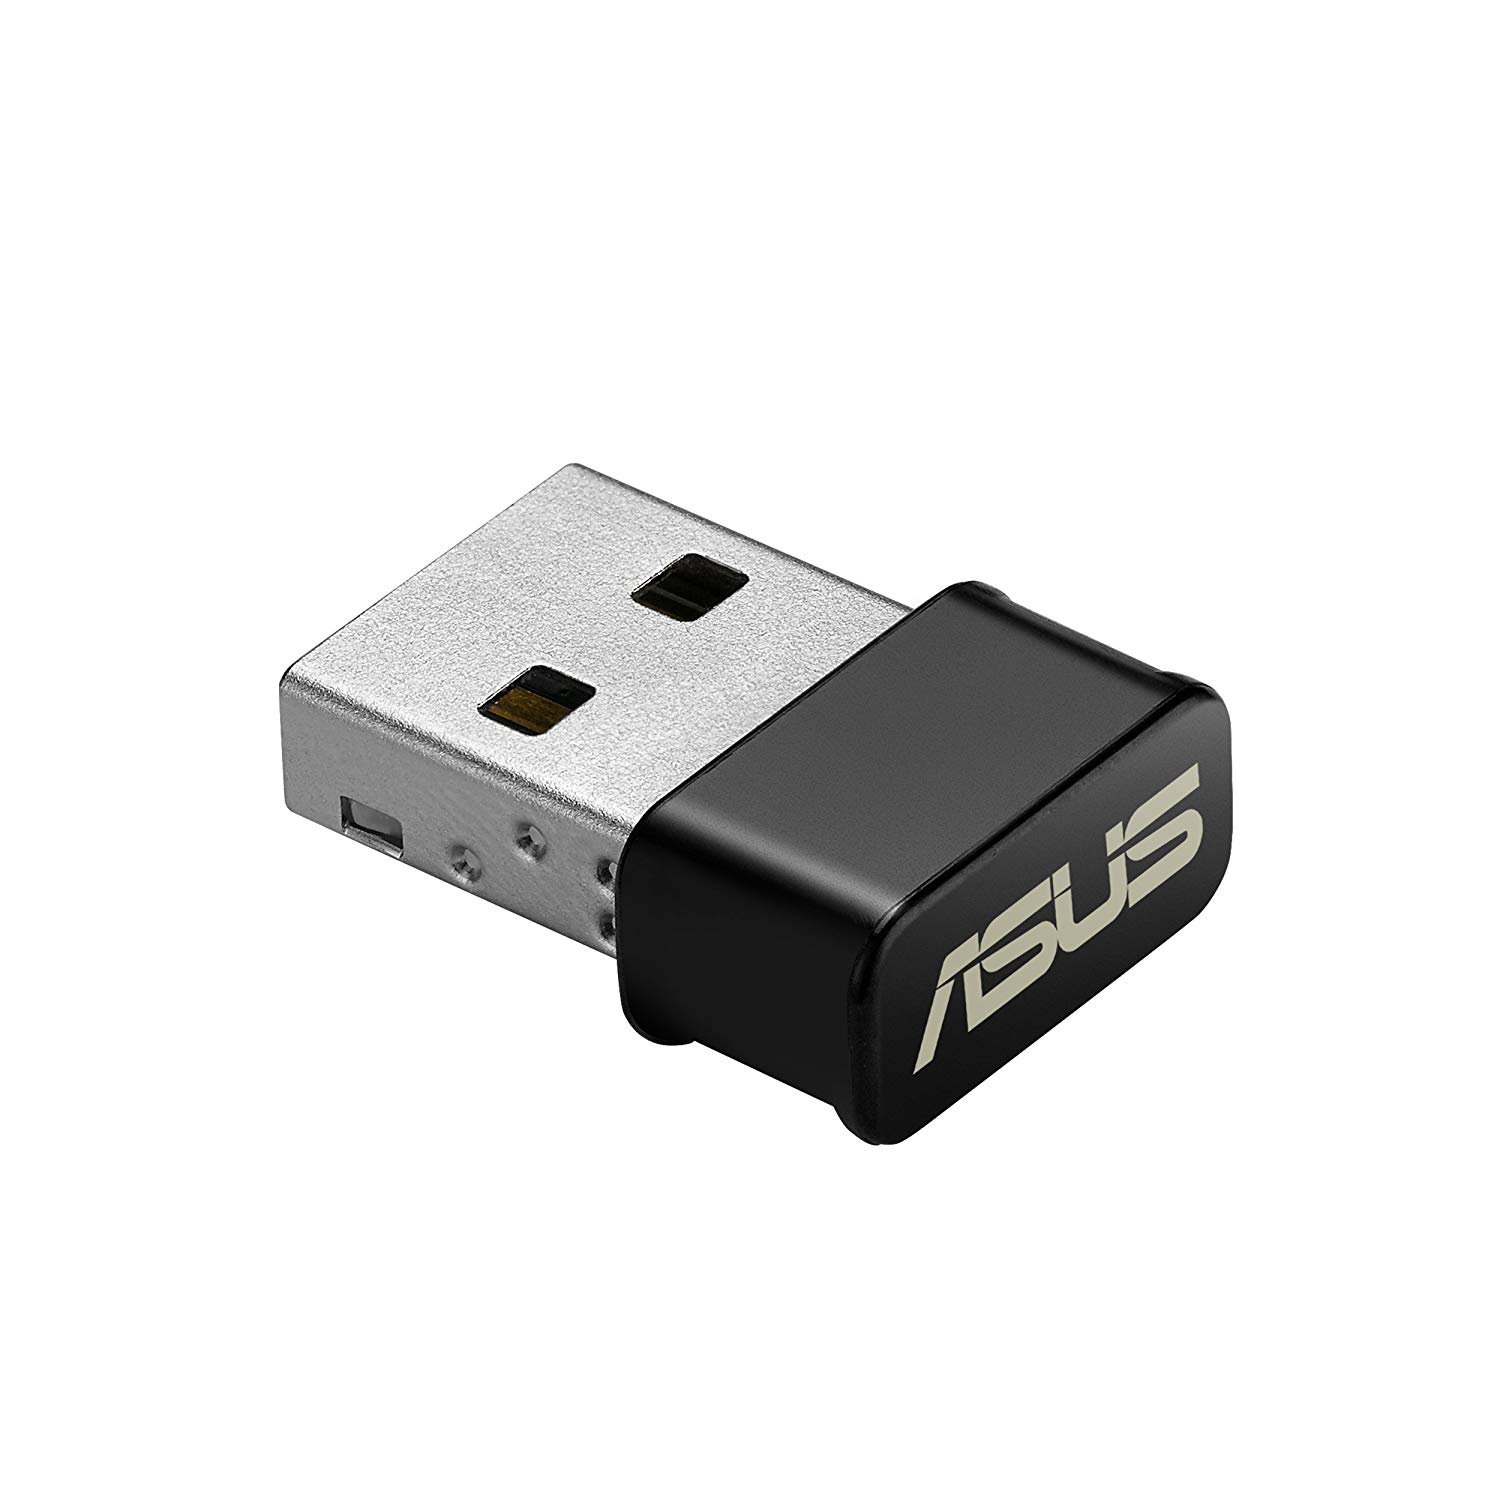 ASUS USB-AC53 Nano USB Adaptador WiFi Banda doble (2.4GHz, 5GHz) AC1200 802.11AC MU-MIMO inalÃ¡mbrico para uso con Windows XP / Vista / 7/8/1/10